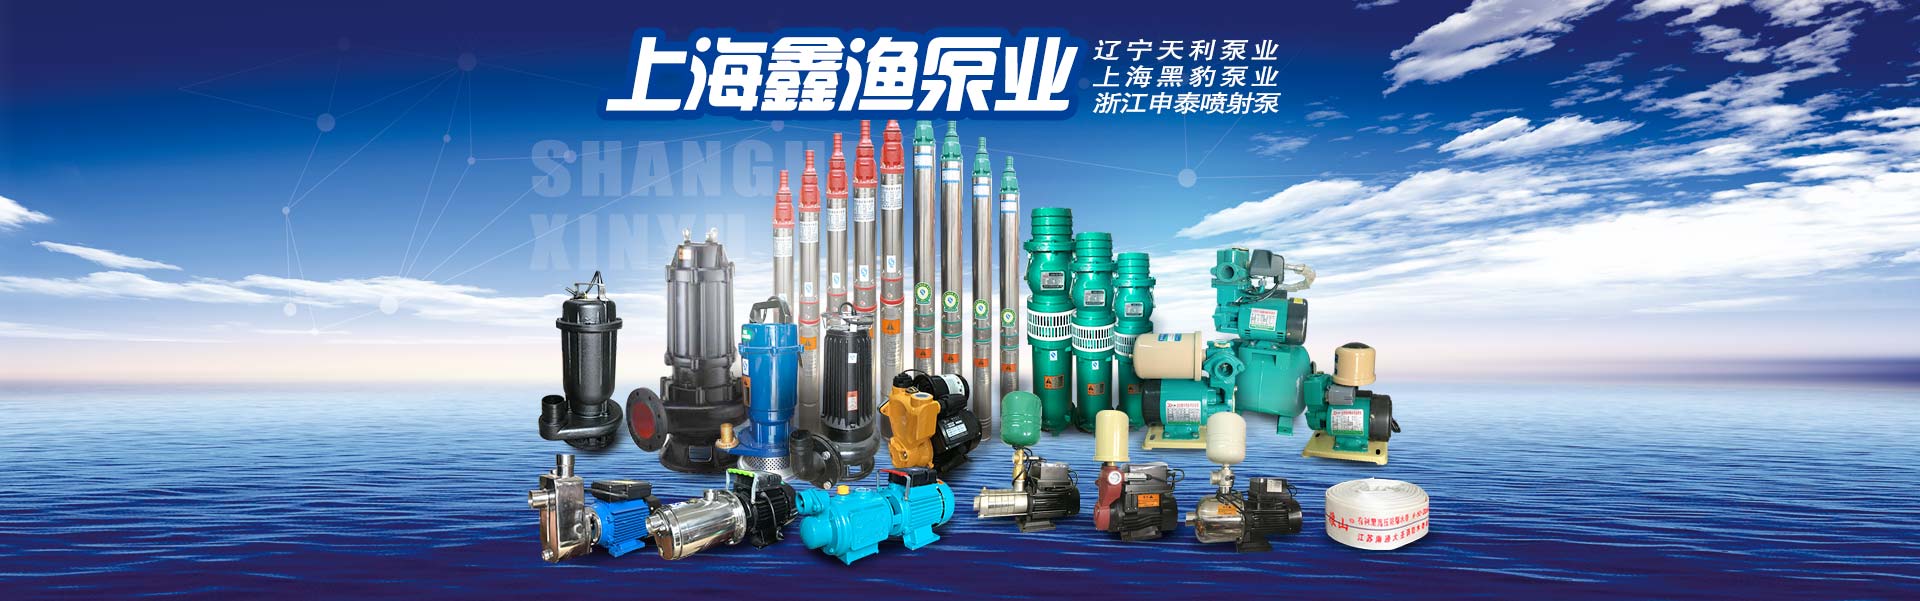 哈尔滨市北环商城新威乐天利泵业经销部产品宣传第2图